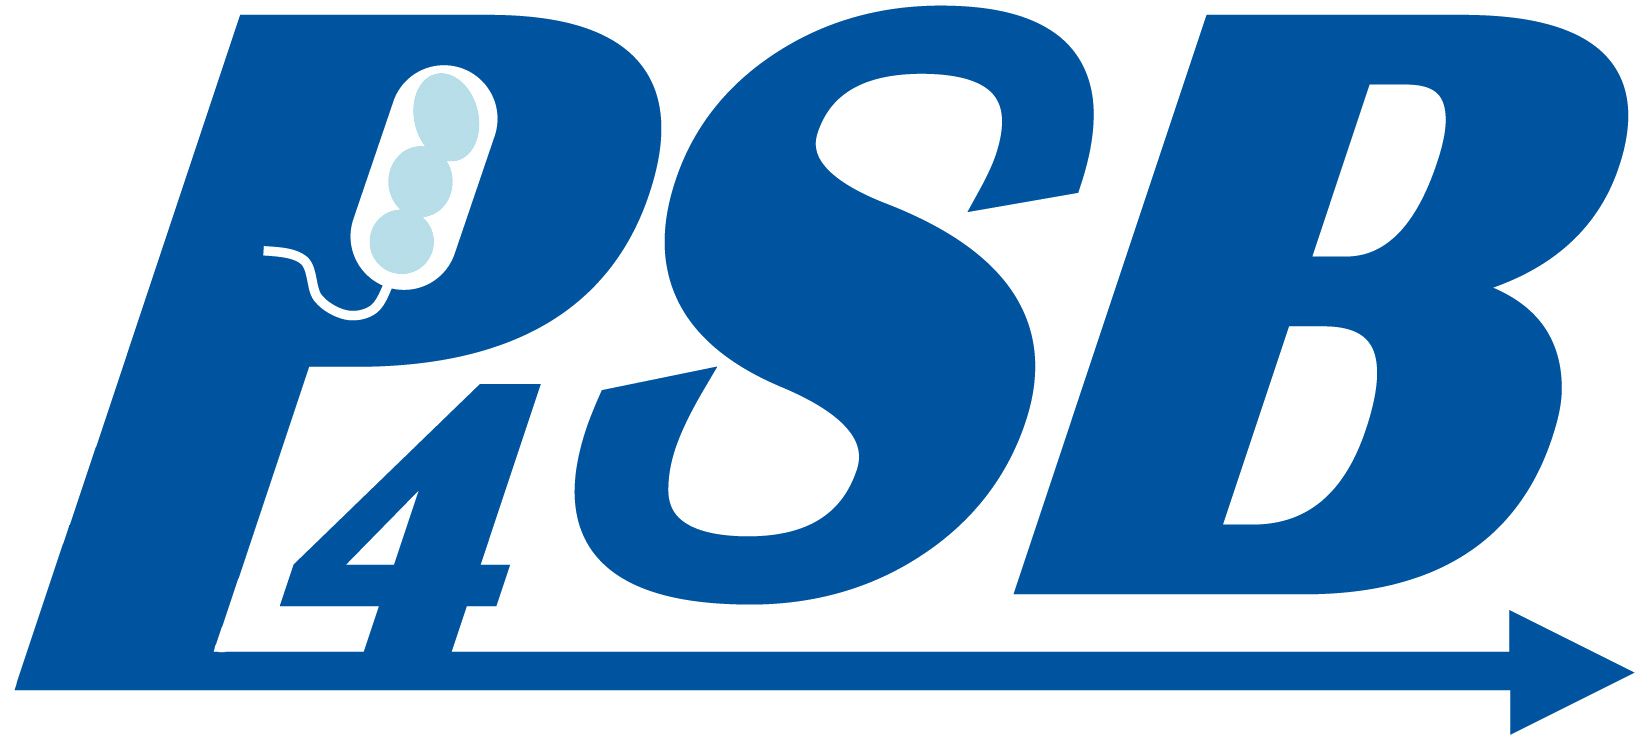 P4SB logo 1